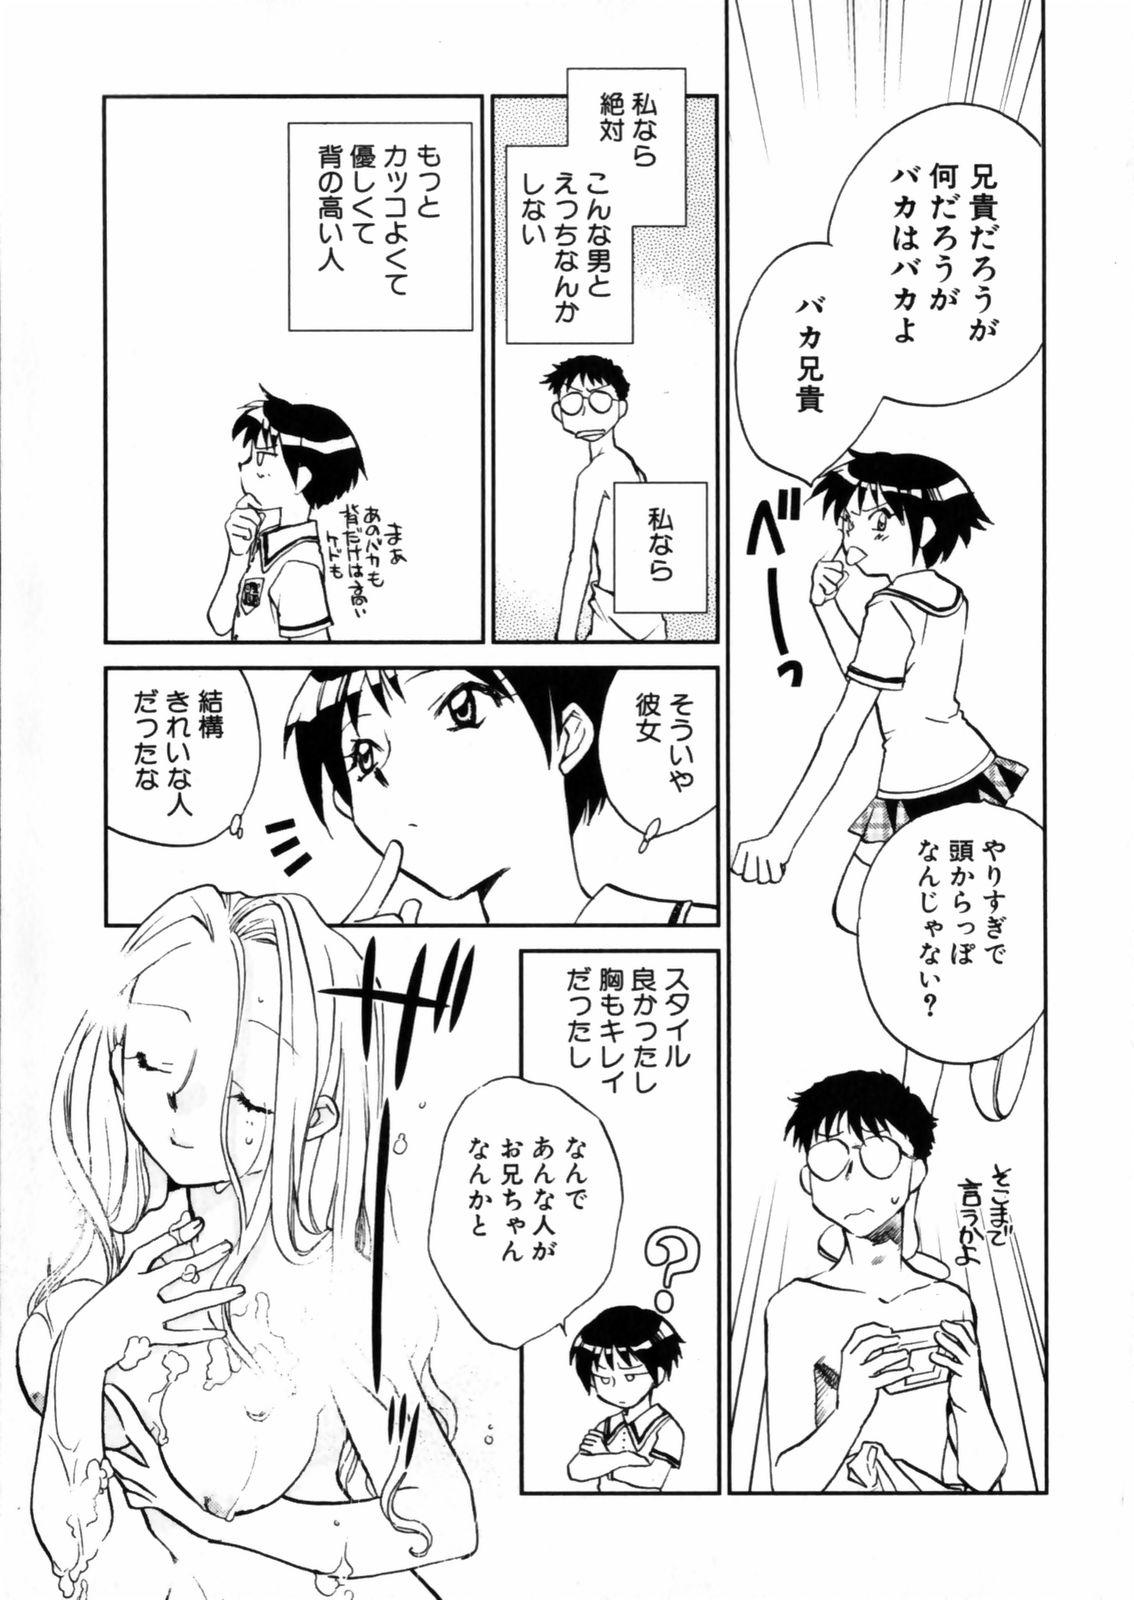 [Okano Ahiru] Hanasake ! Otome Juku (Otome Private Tutoring School) Vol.2 142